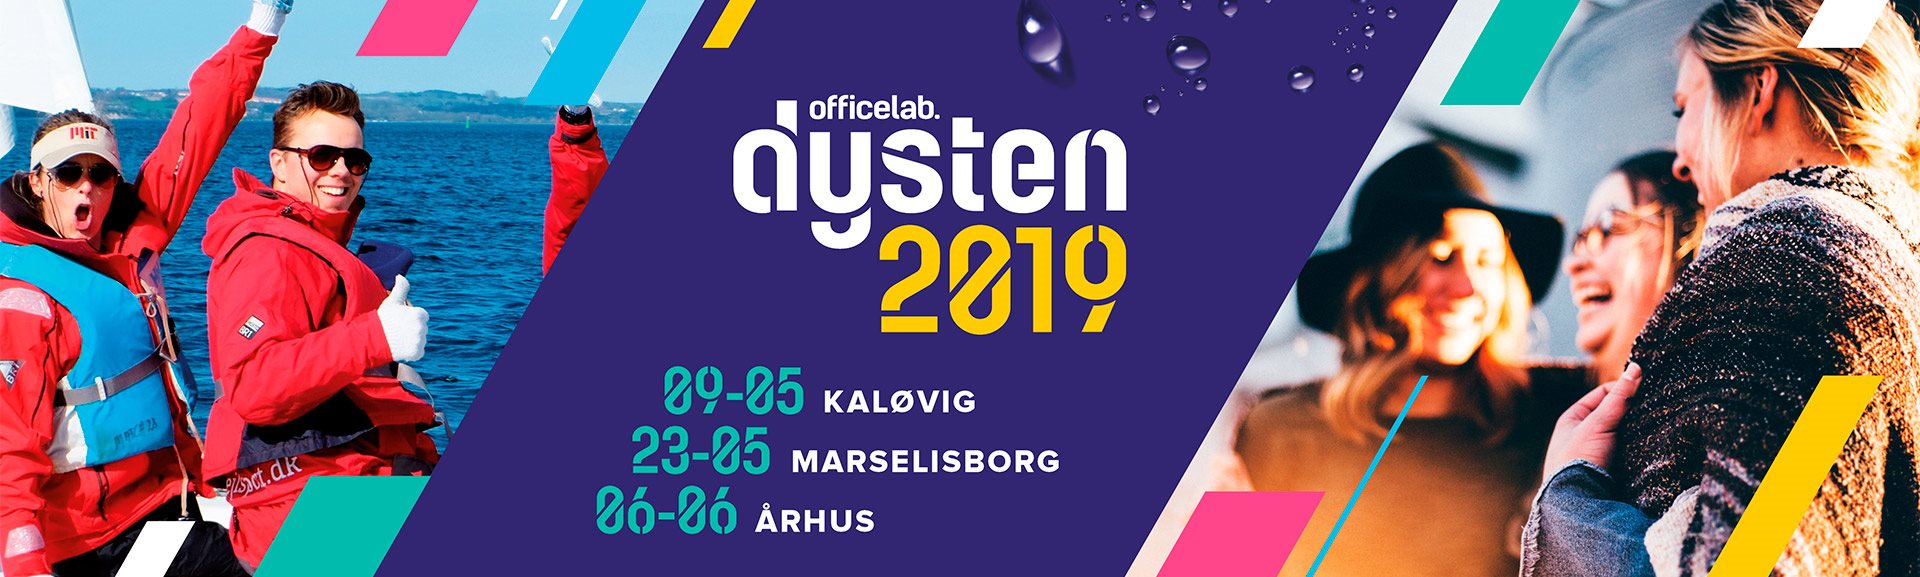 Officelab Dysten 2019